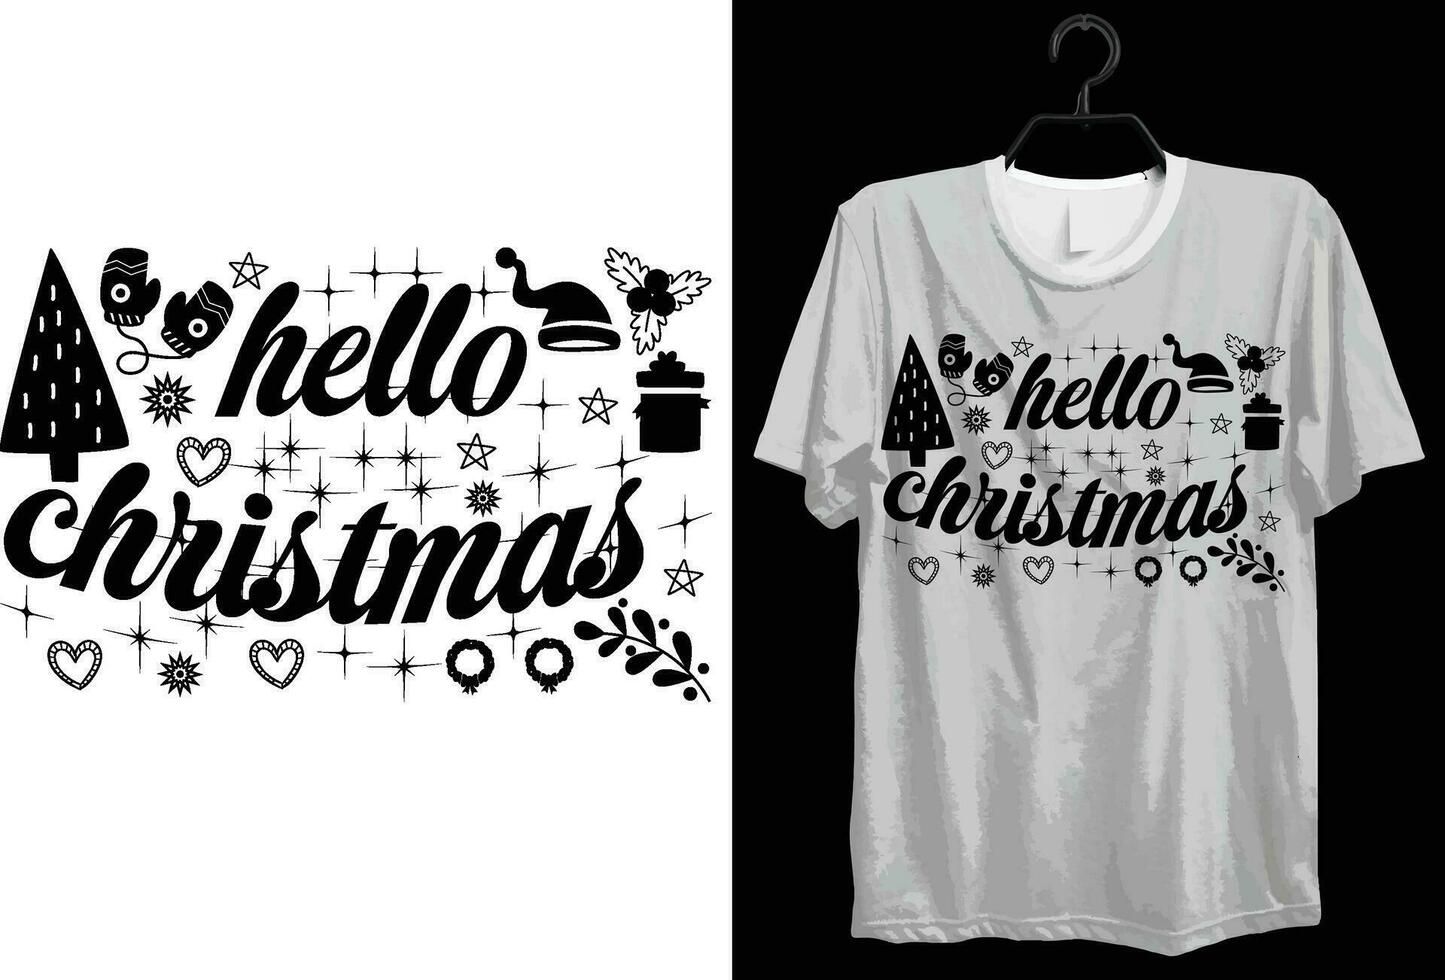 Hallo kerstmis. grappig geschenk item vrolijk Kerstmis t-shirt ontwerp voor Kerstmis liefhebbers. vector